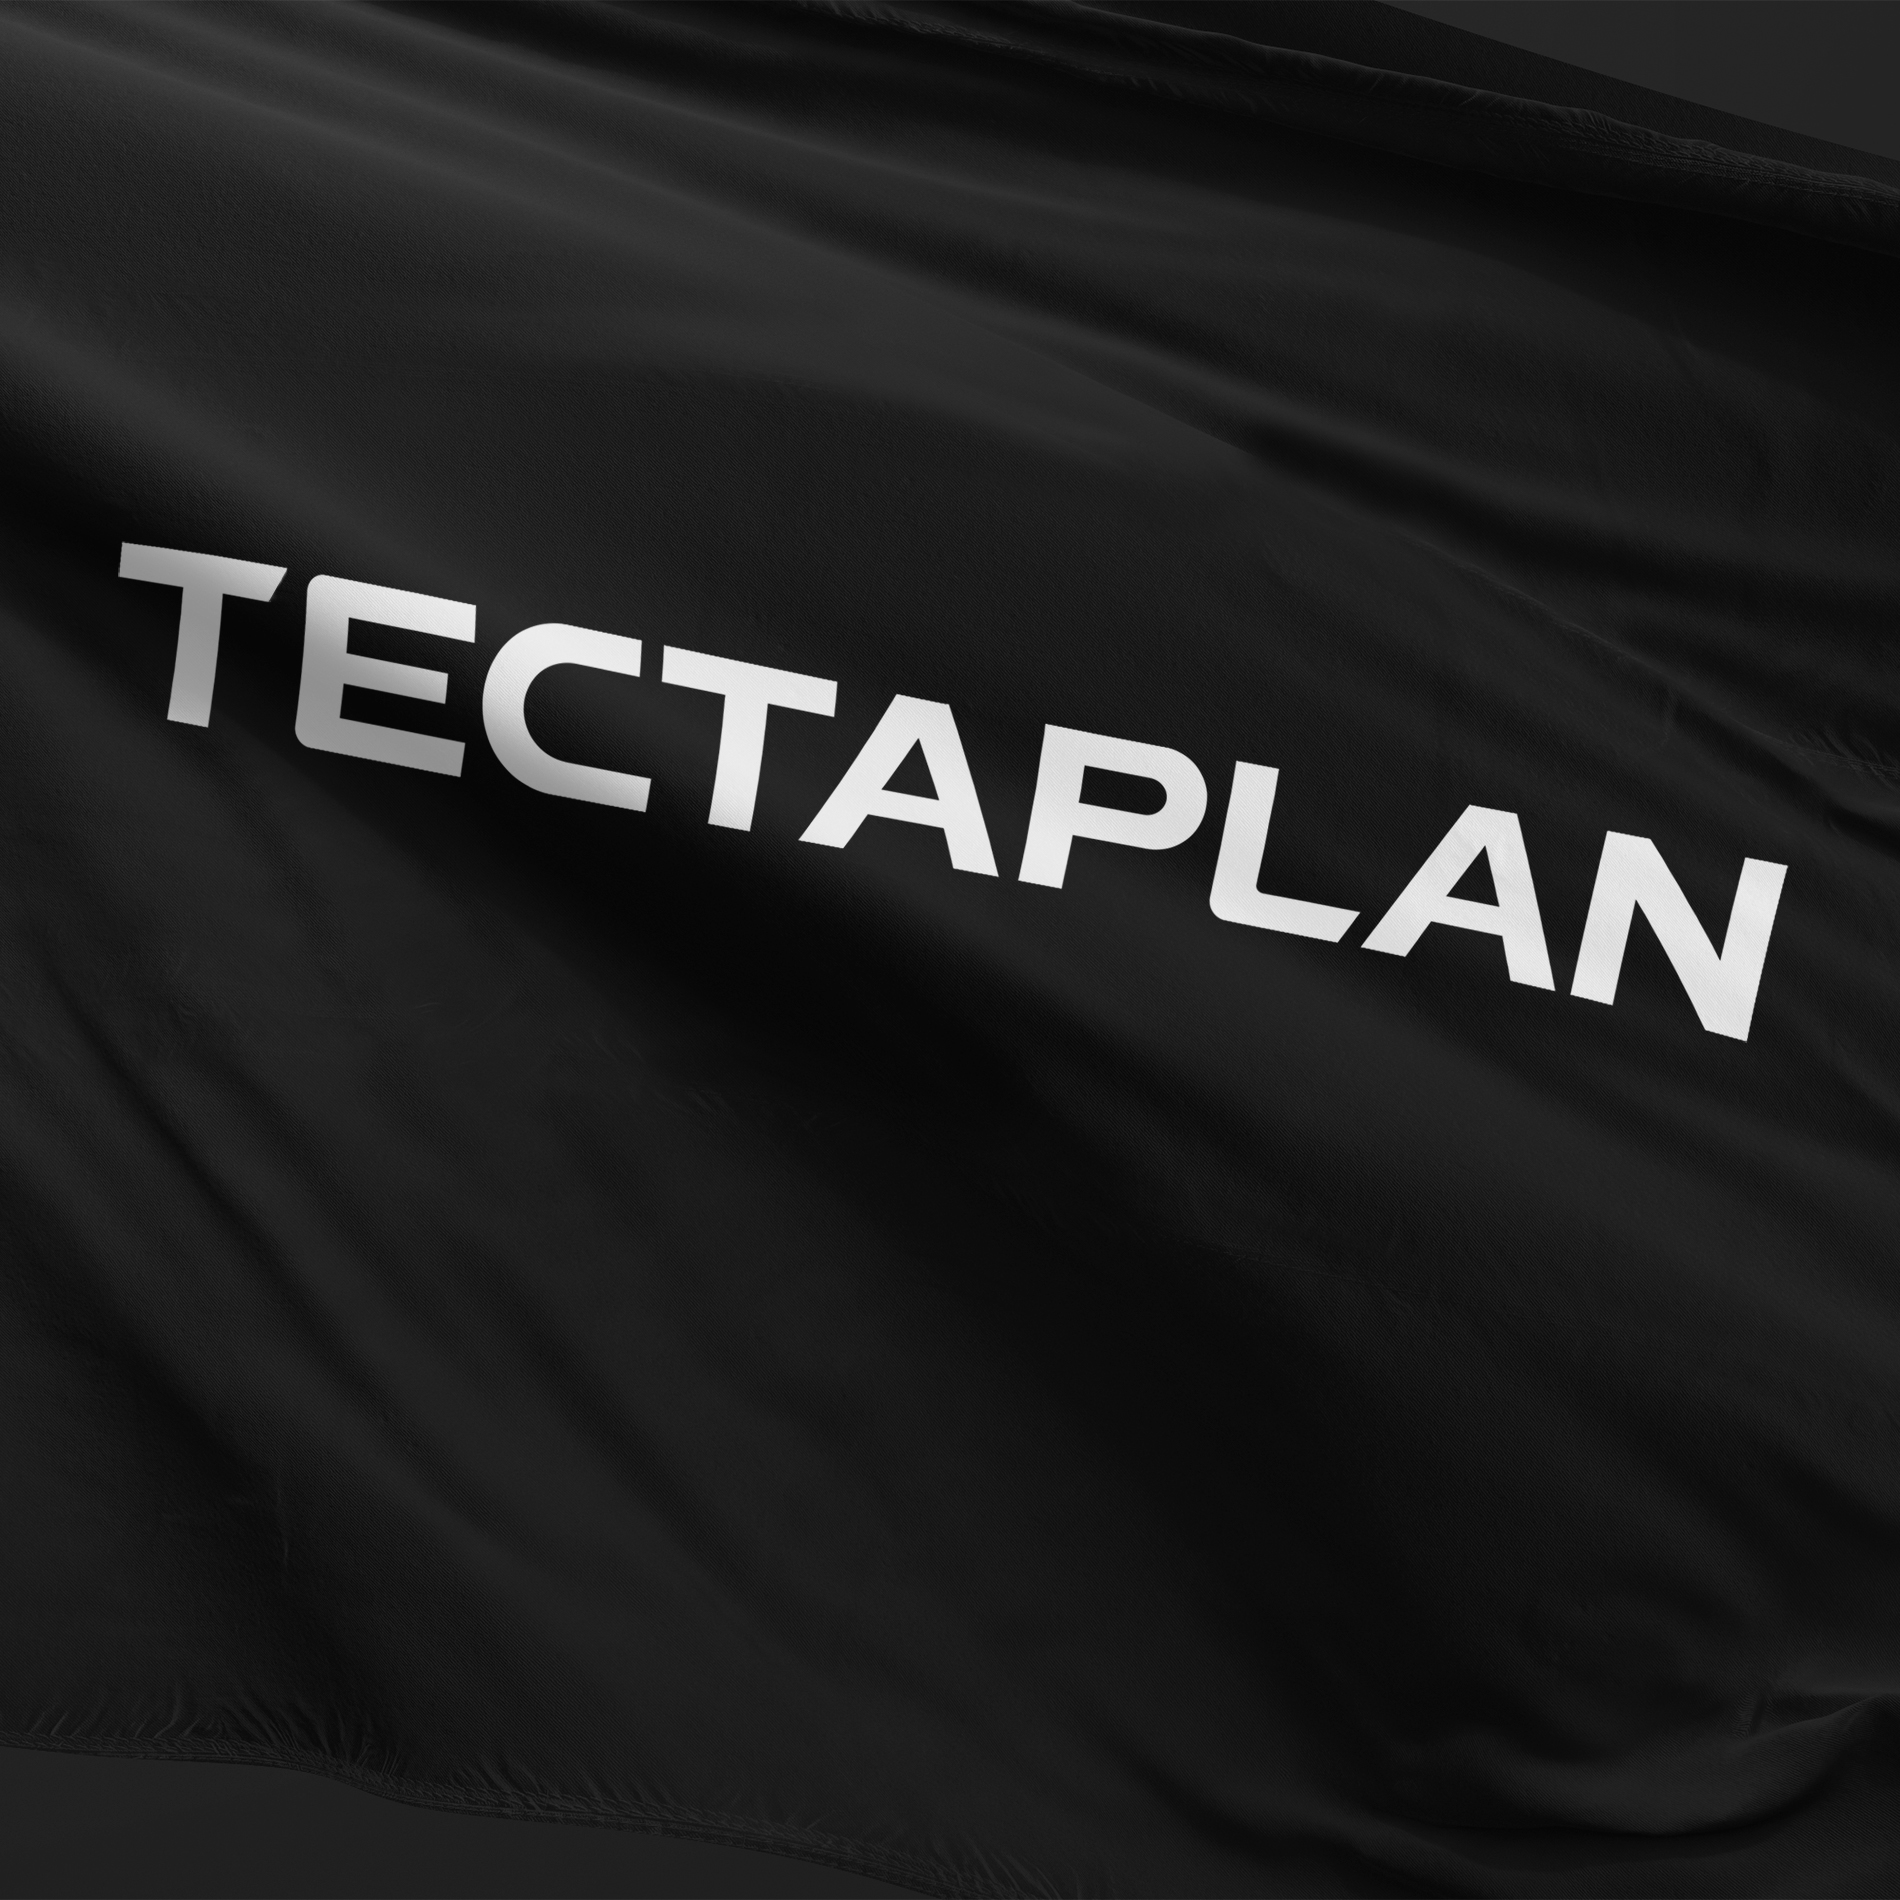 Tectaplan_Flag